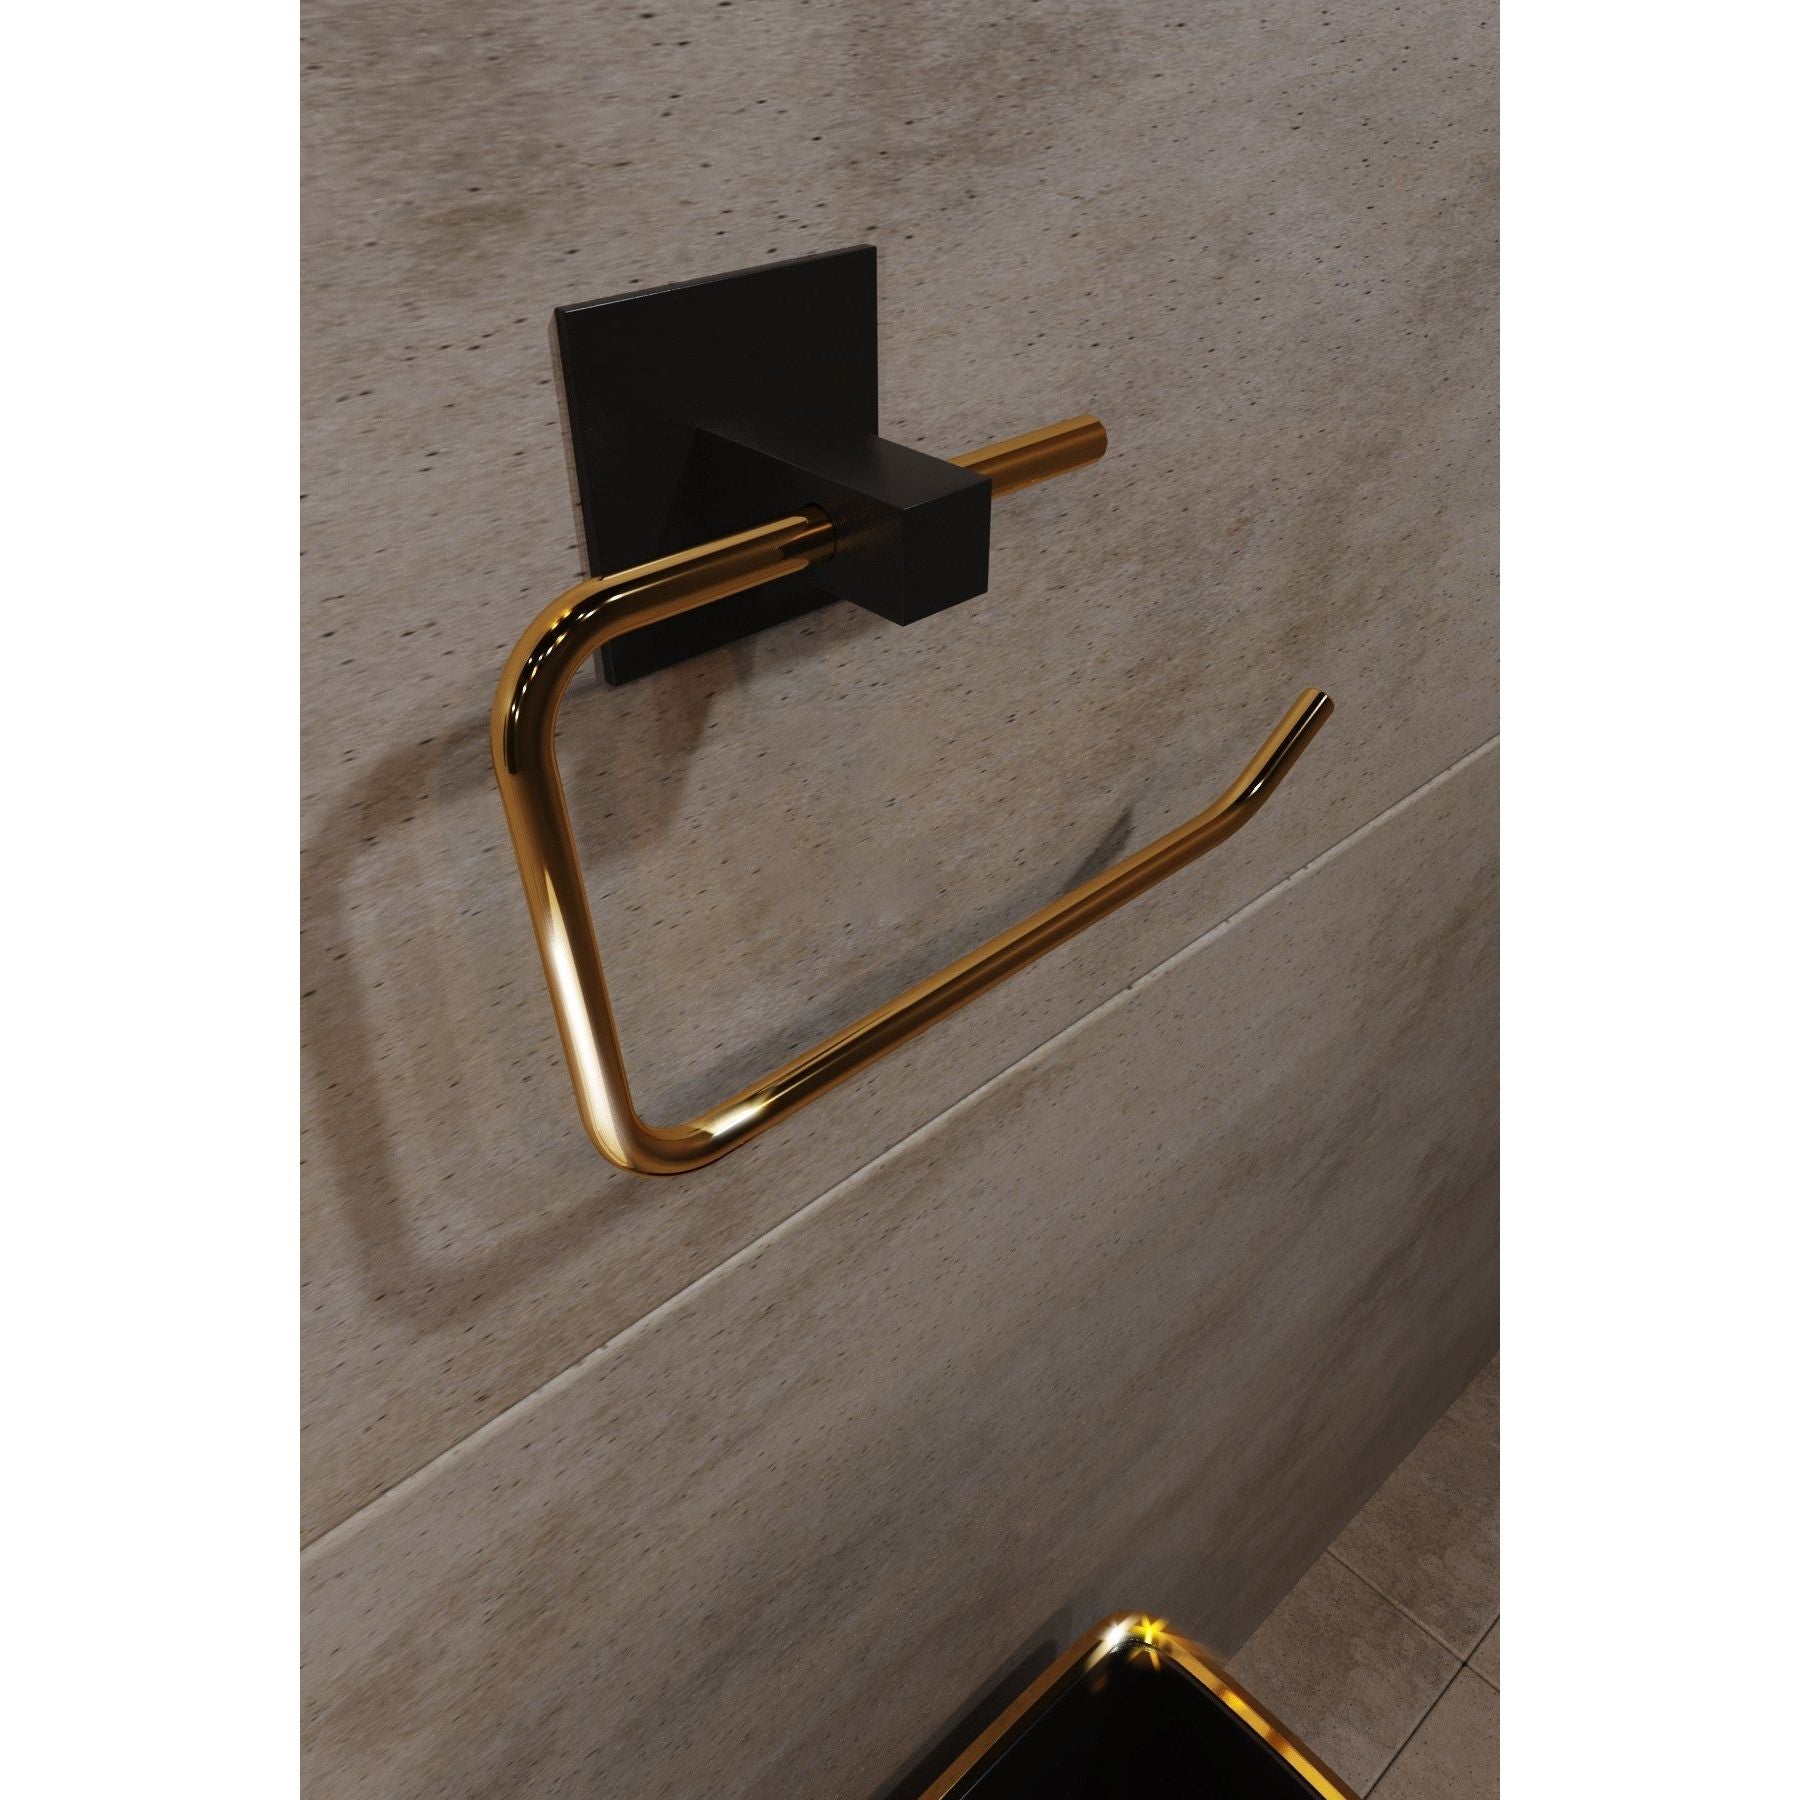 Suport hartie igienica 498HFT1118, negru/auriu, metal, 8x5x16 cm